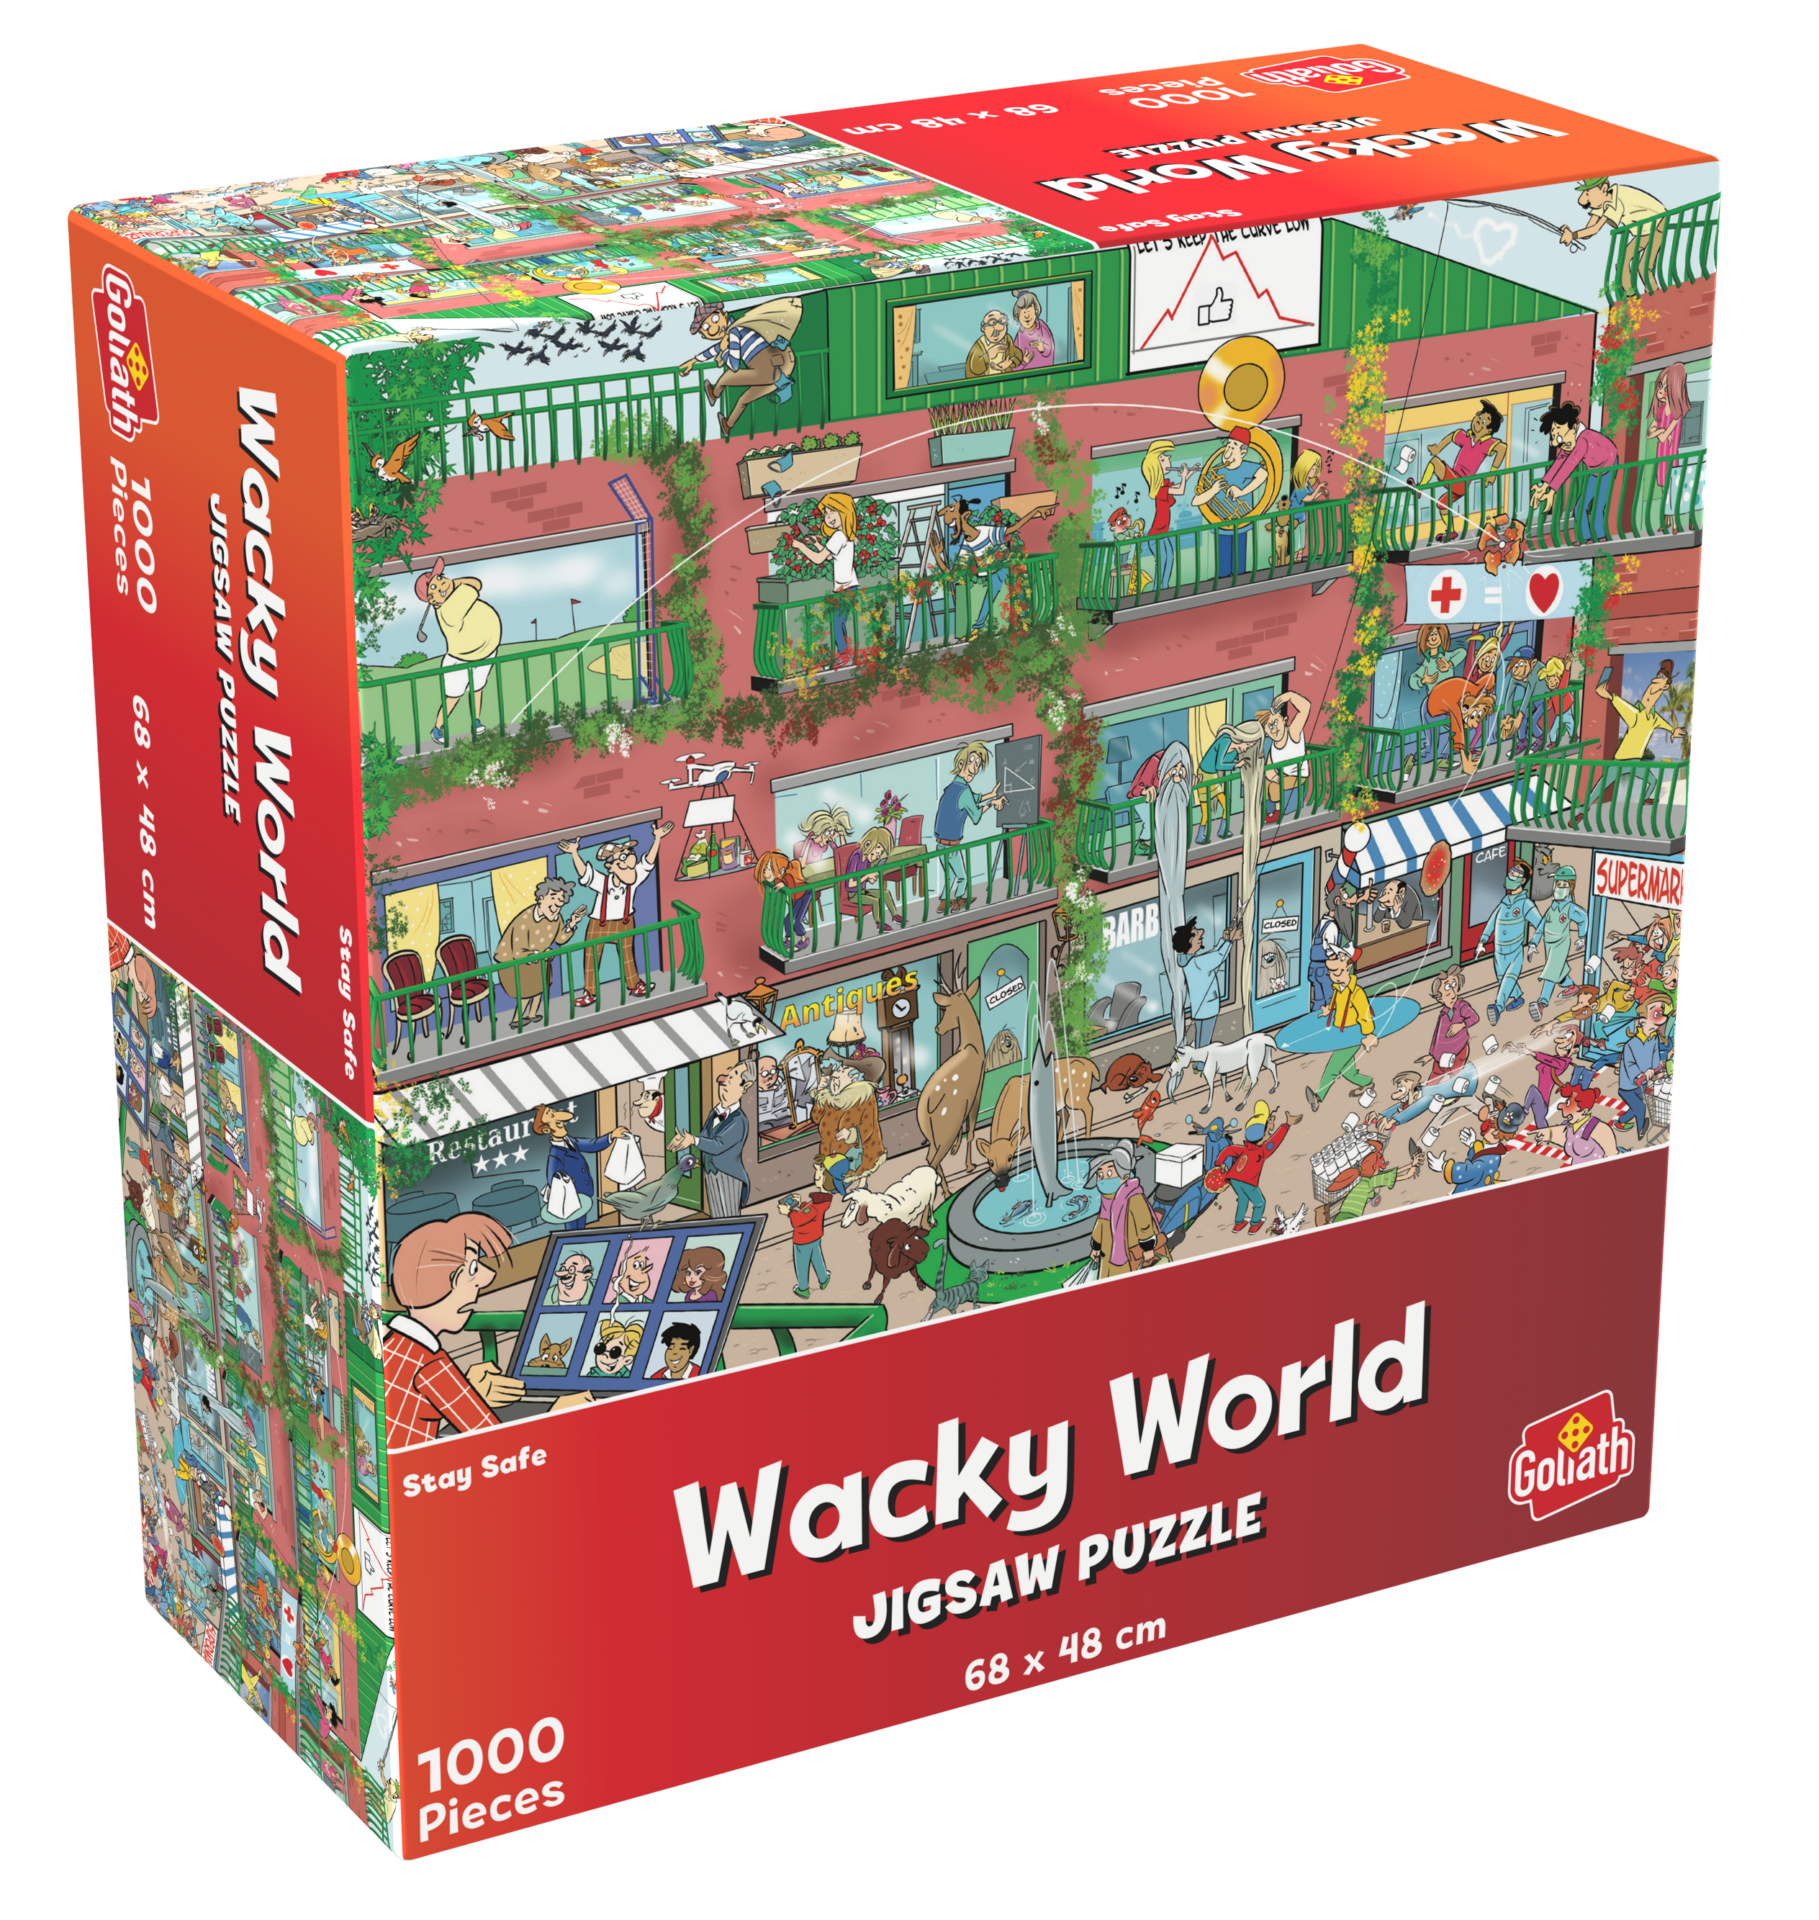 De doos van de Wacky World Stay Safe puzzel vanuit een linkerhoek